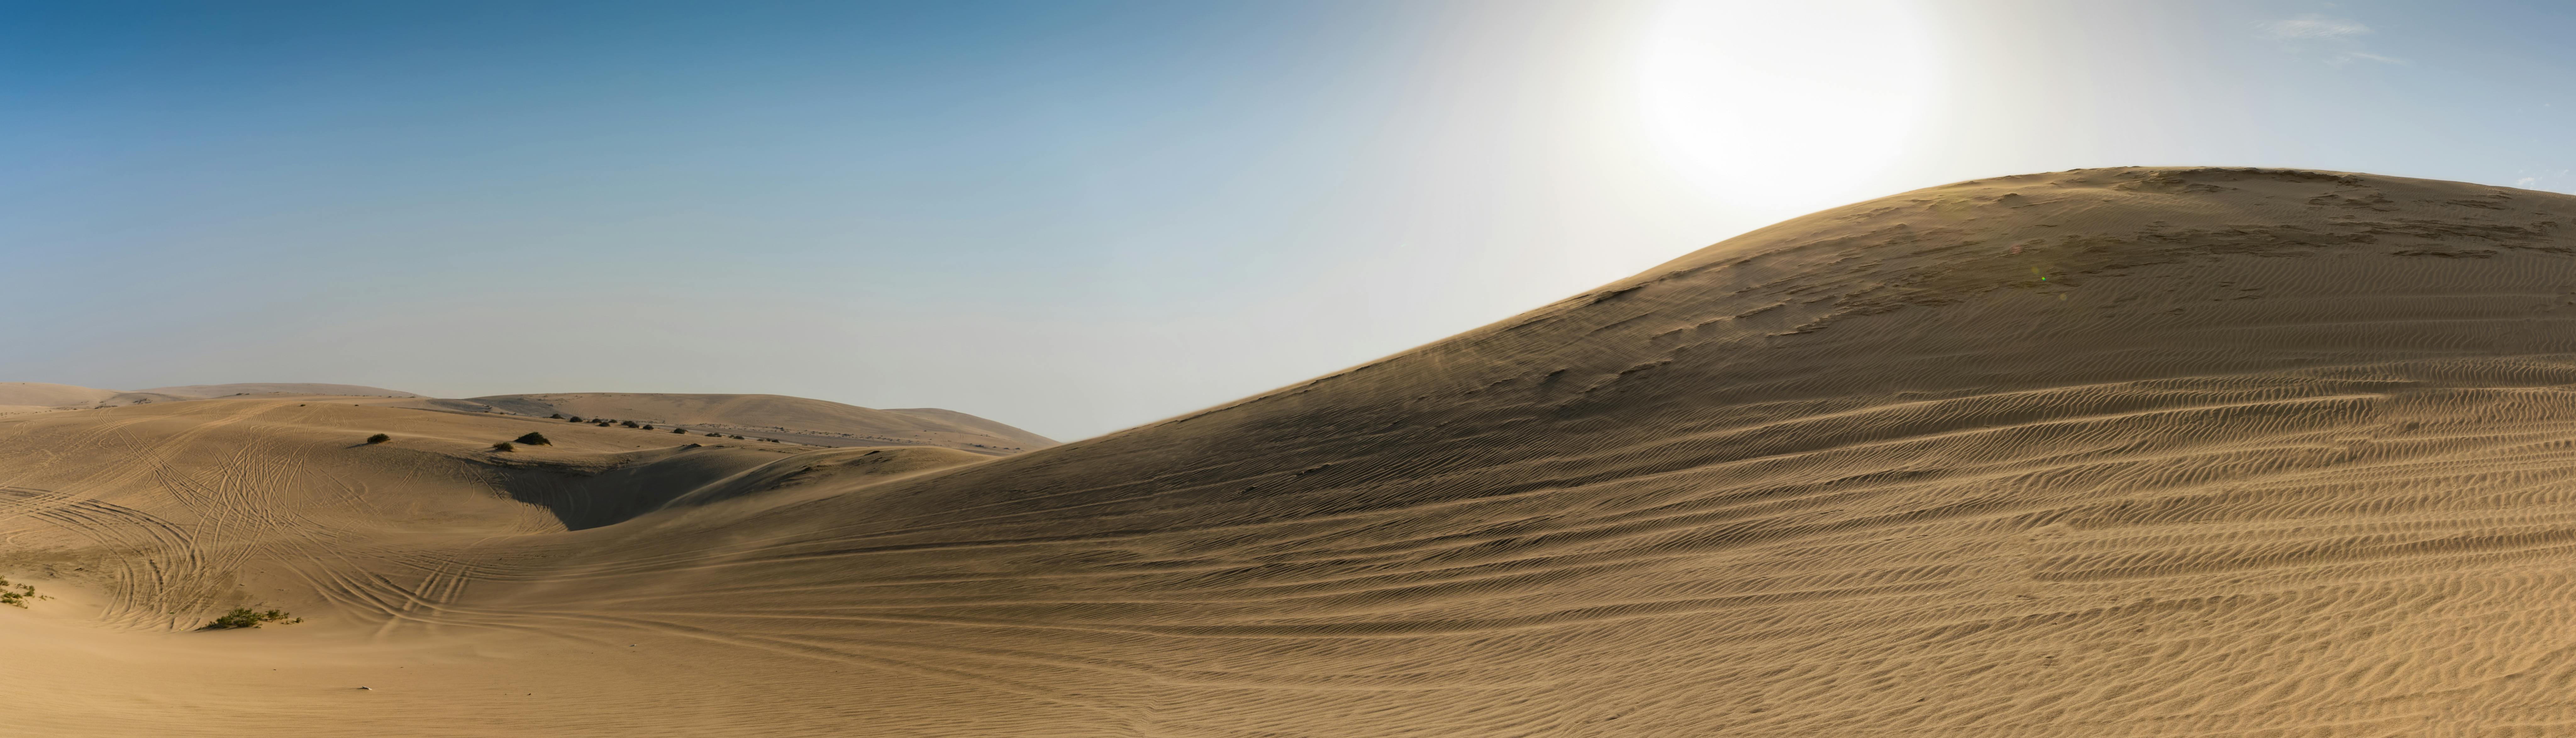 Deserto del Qatar